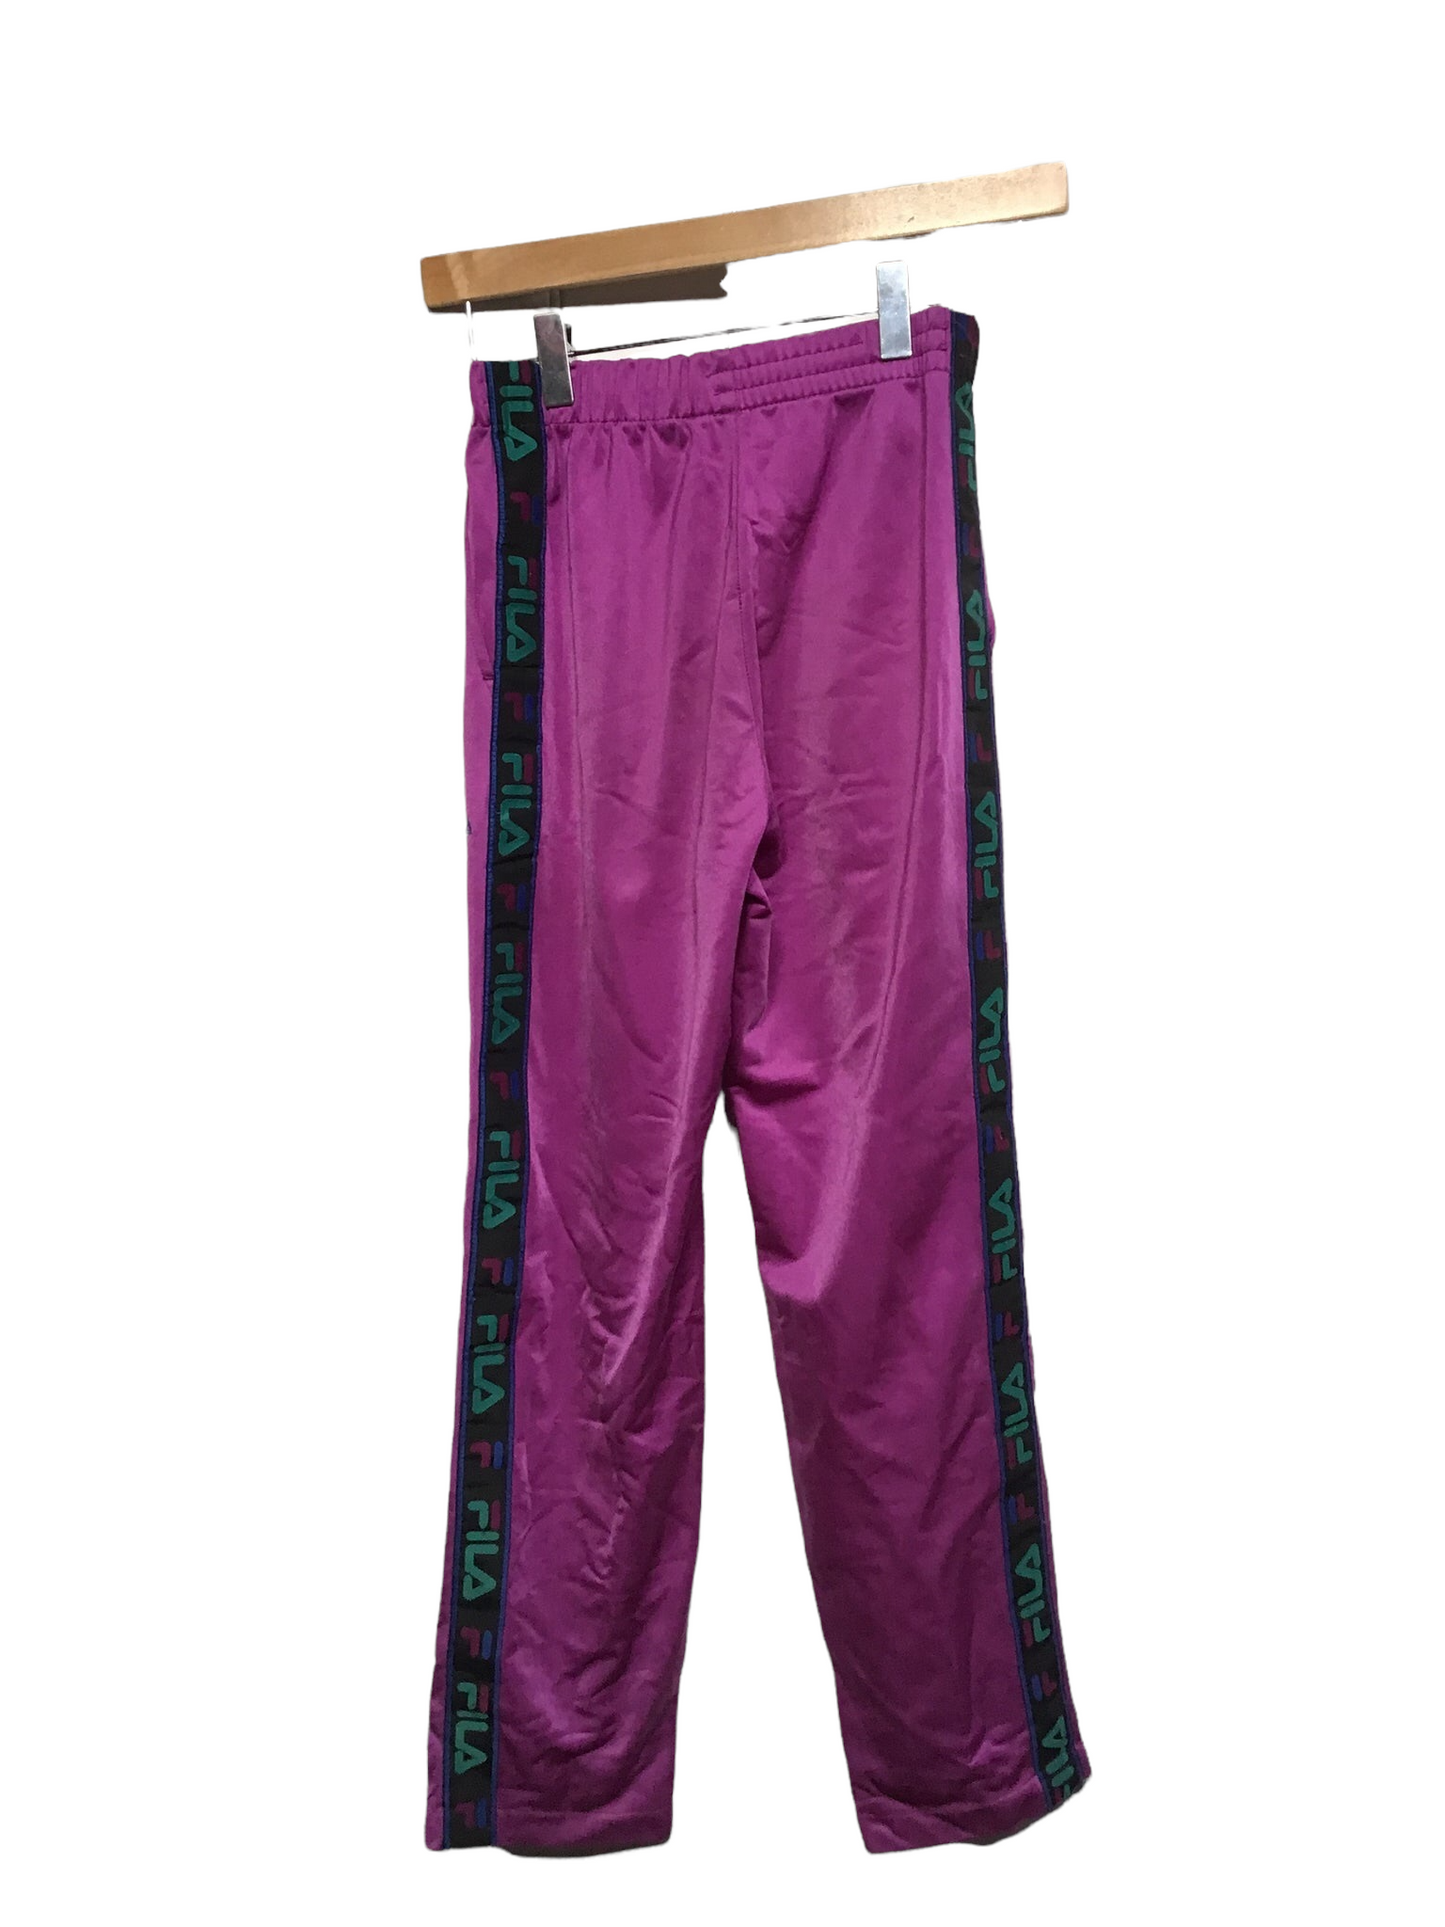 Fila Sweatpants (Size XXS)